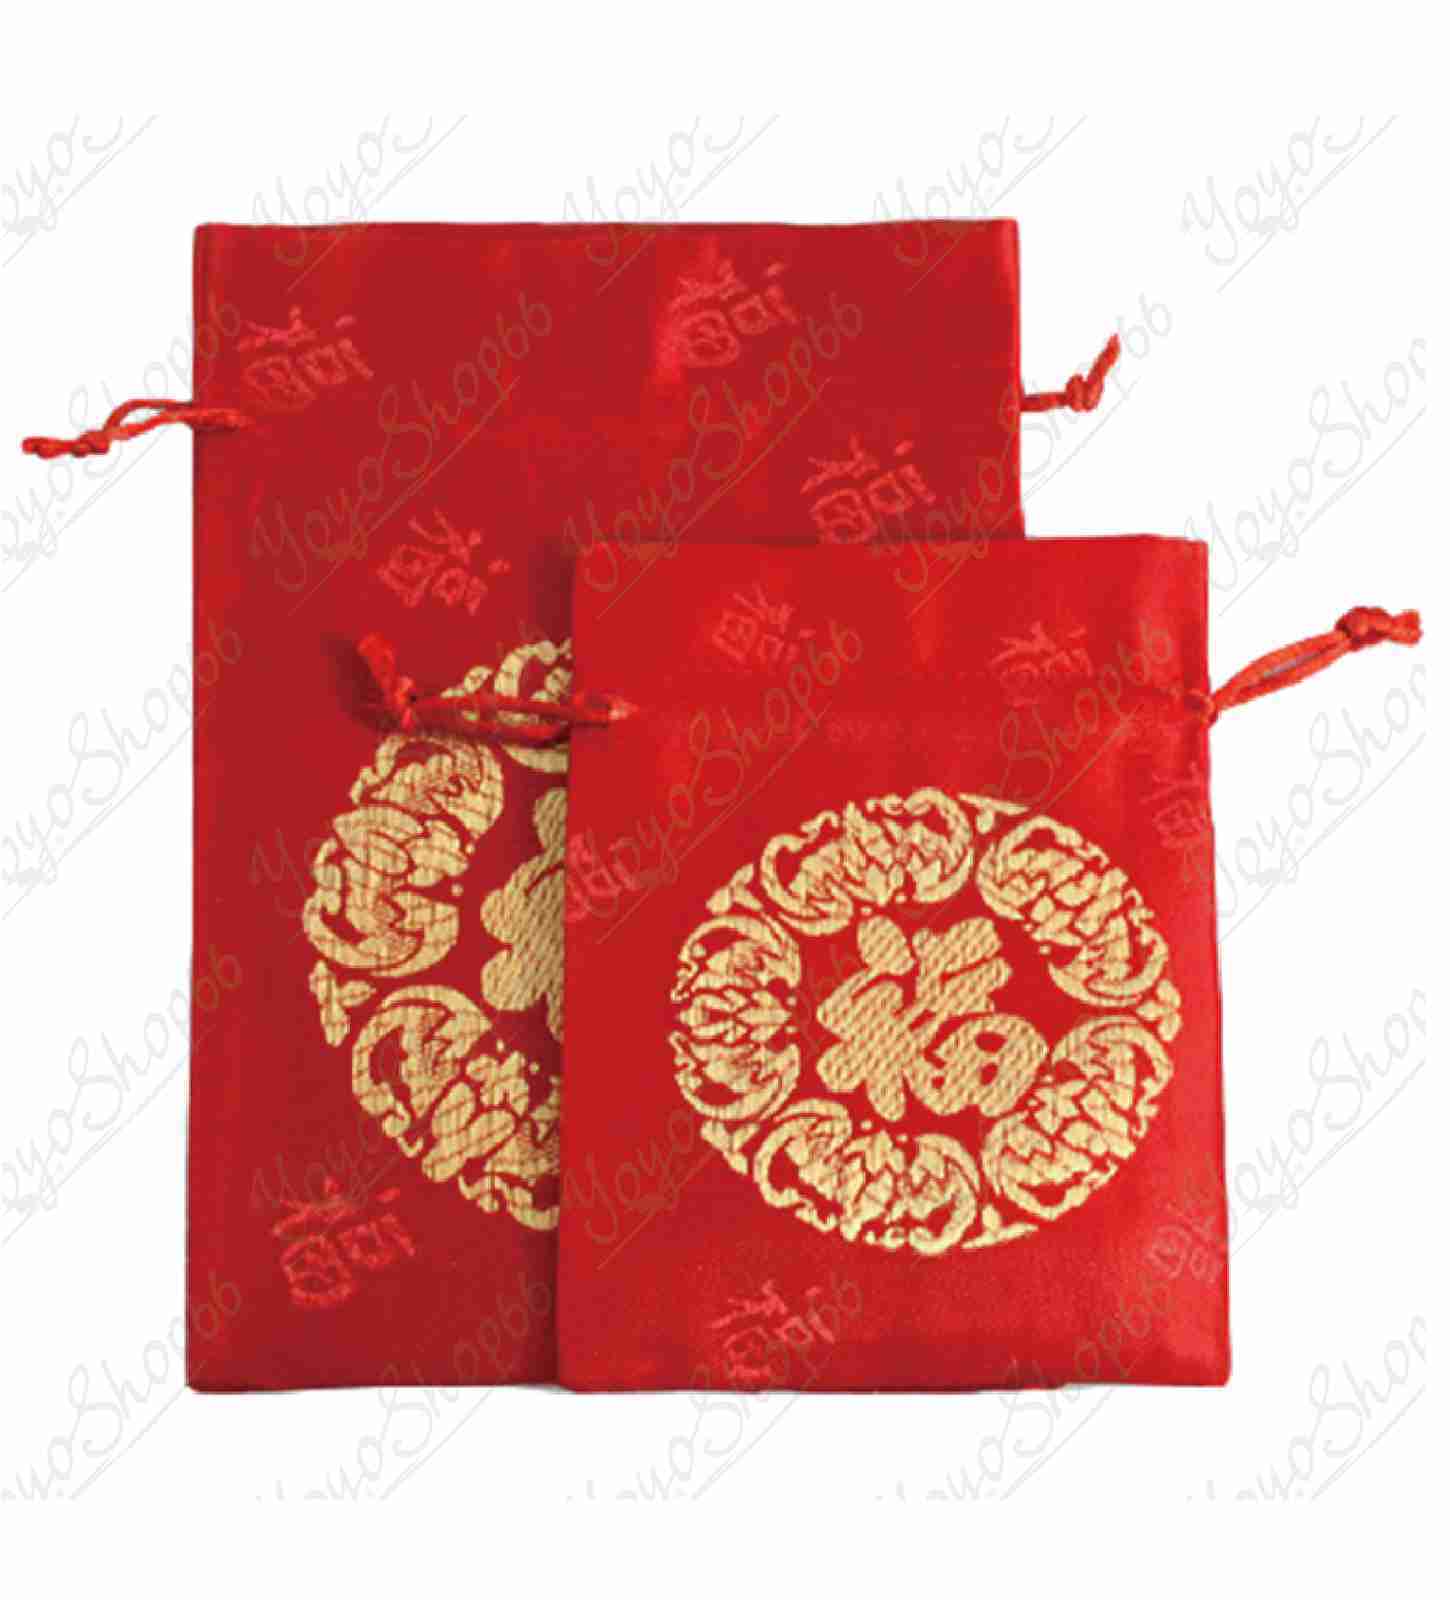 #620【絨布福字(小)1個10X14 CM】小福袋錦囊(1入) 新年福袋 紅色束口袋 絨布收納袋 紅色小布袋【愛尚生活